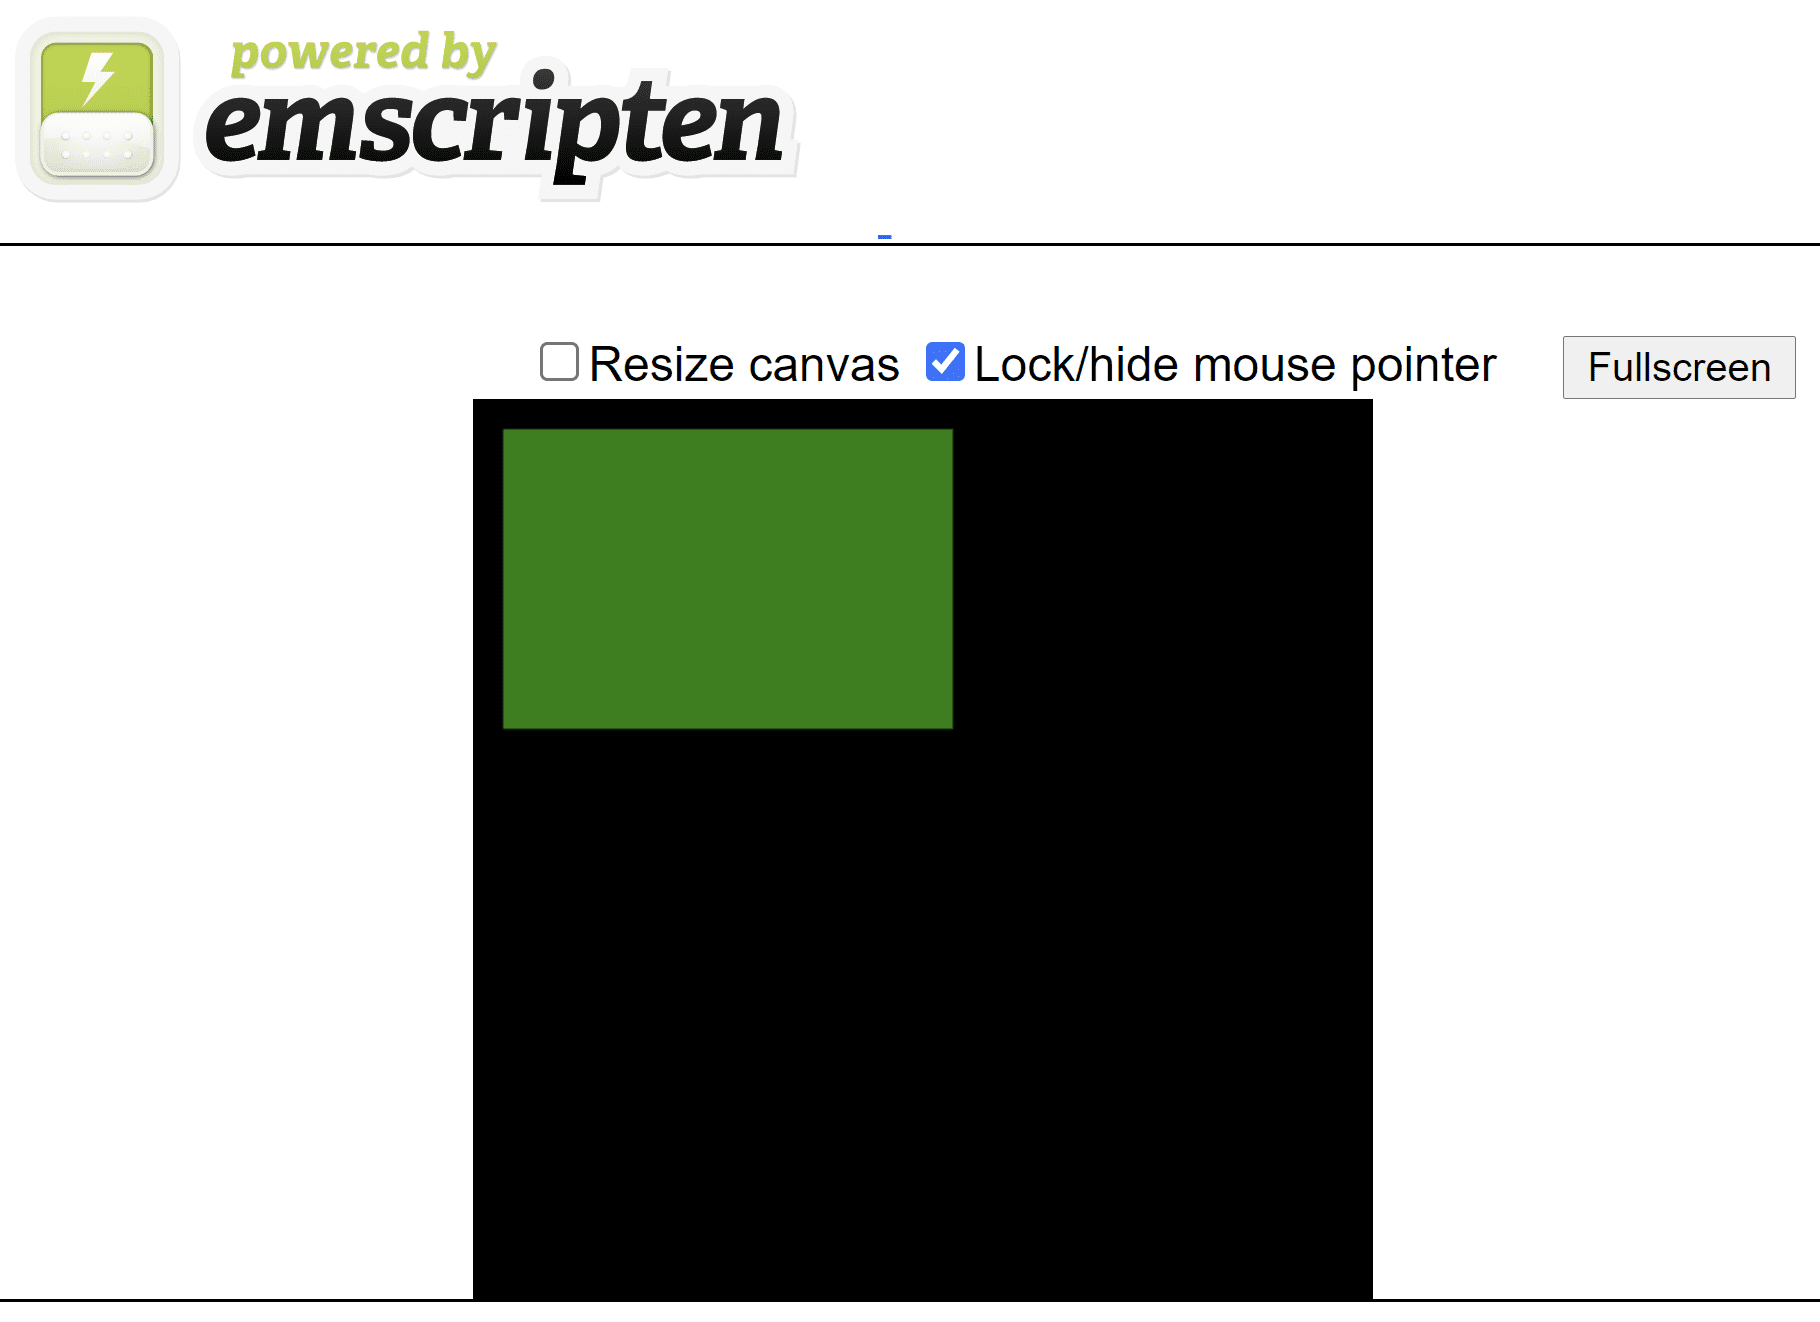 صفحة HTML تم إنشاؤها بنقشة تعرض مستطيلاً أخضر على لوحة مربعة سوداء.